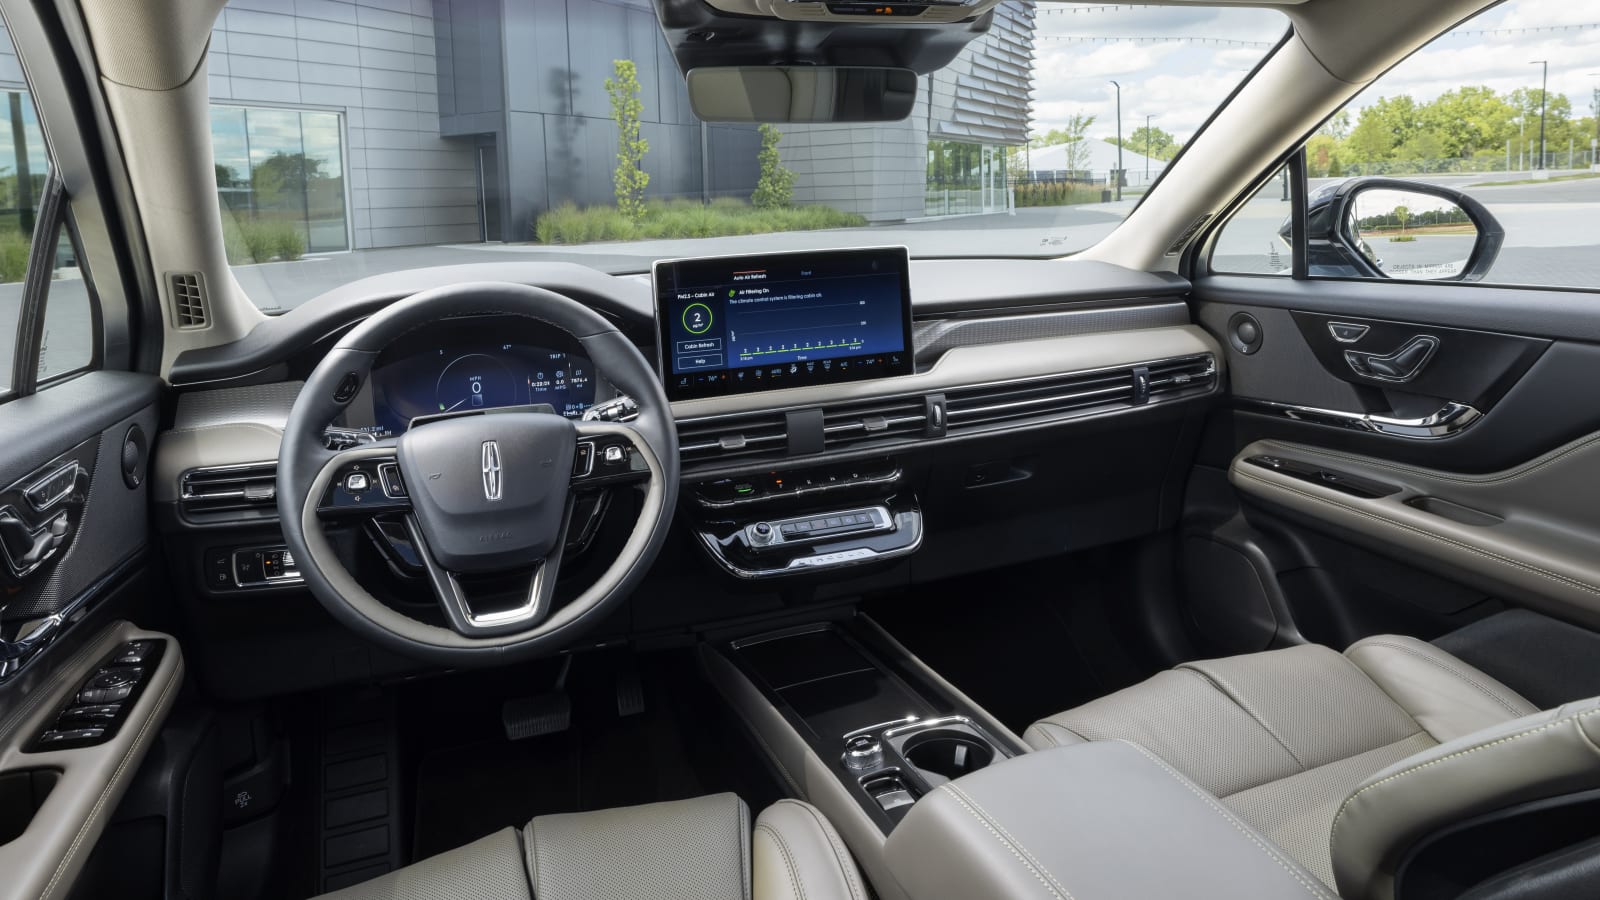 2023 Lincoln Corsair yeni bir yüz ve daha fazla teknoloji kazanıyor, düğmeleri kaybediyor